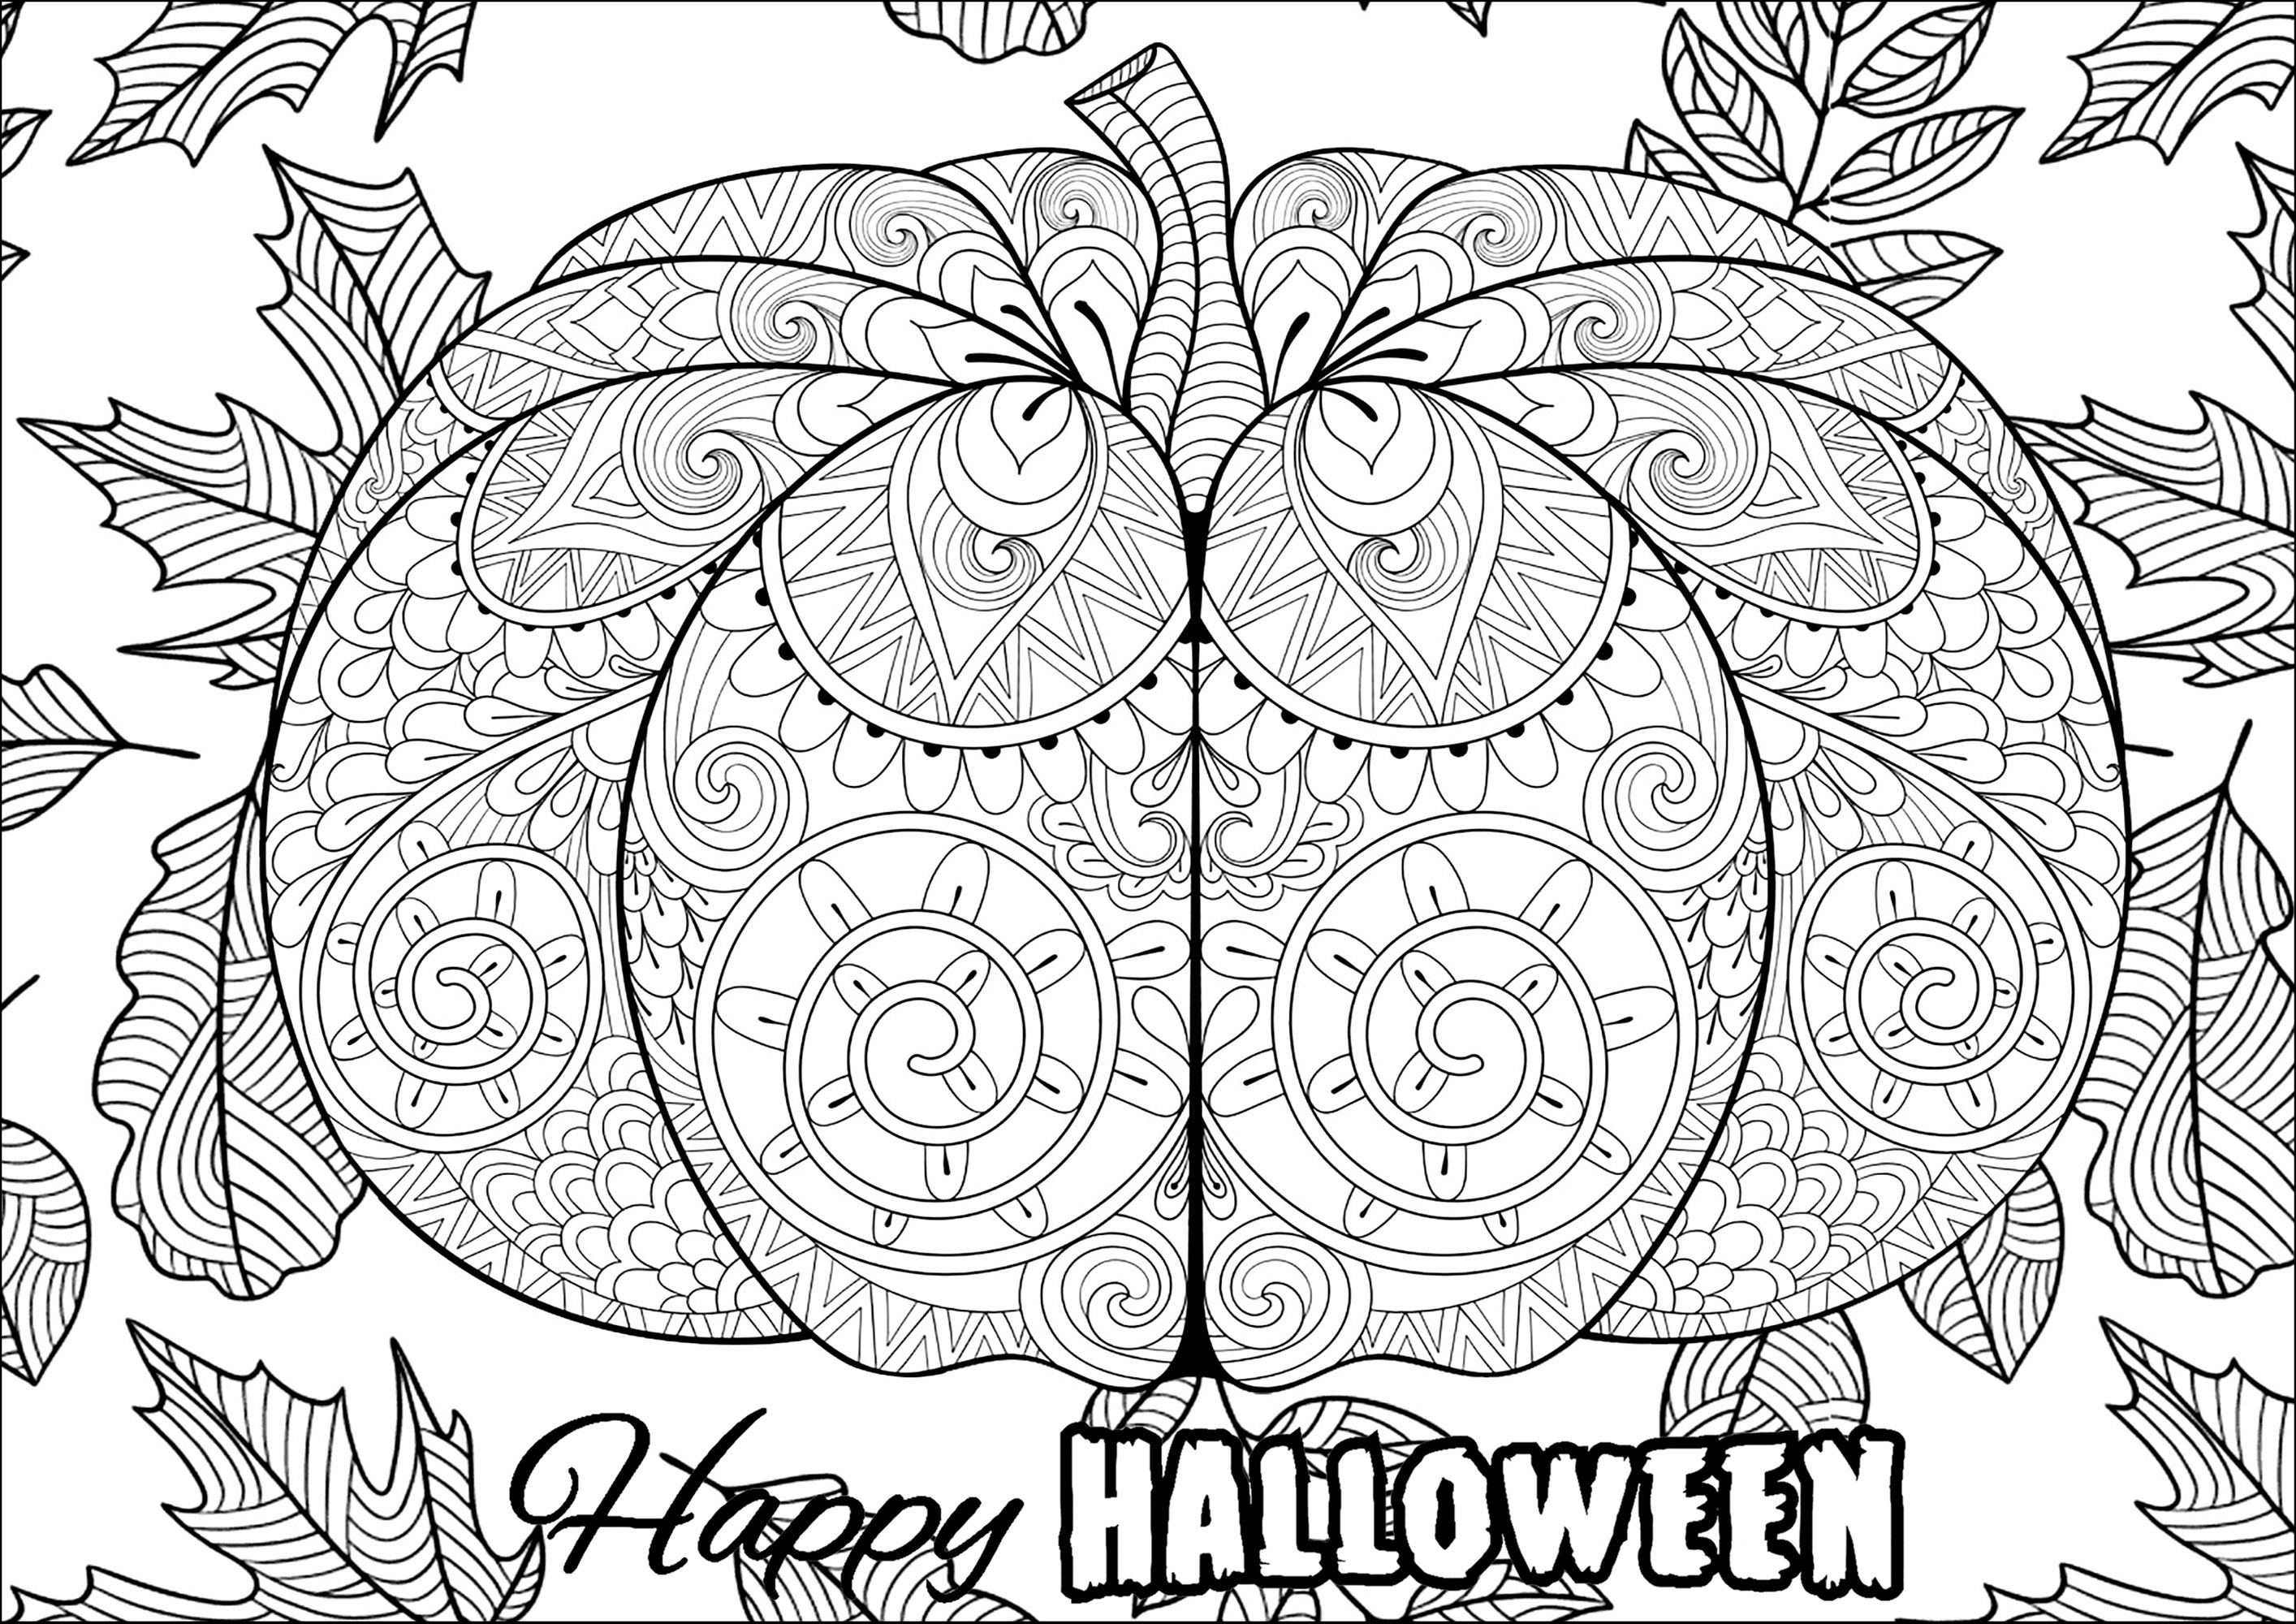 Großer Halloween-Kürbis mit Motiven und Blättern. Viele Muster zum Ausmalen, Quelle : 123rf   Künstler : Ipanki